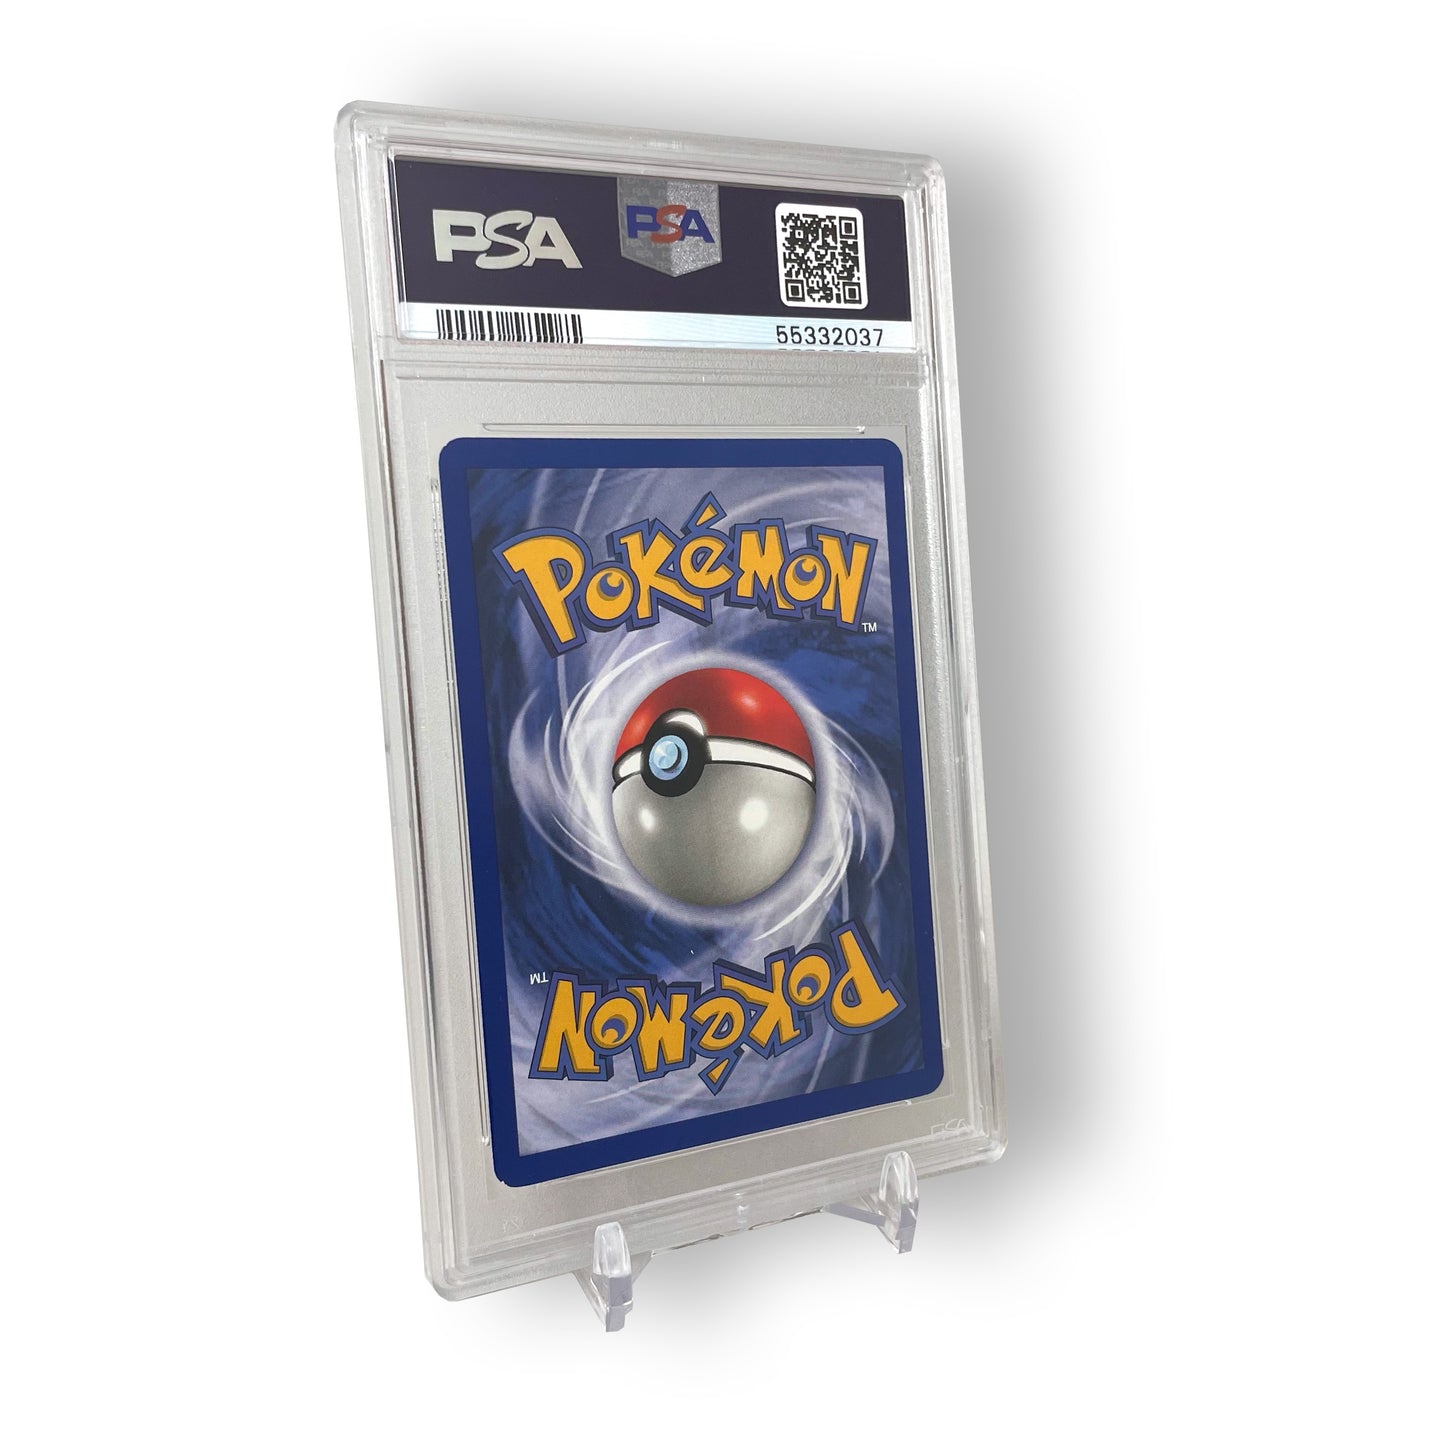 1999 Pokémon Game Charizard - Holo